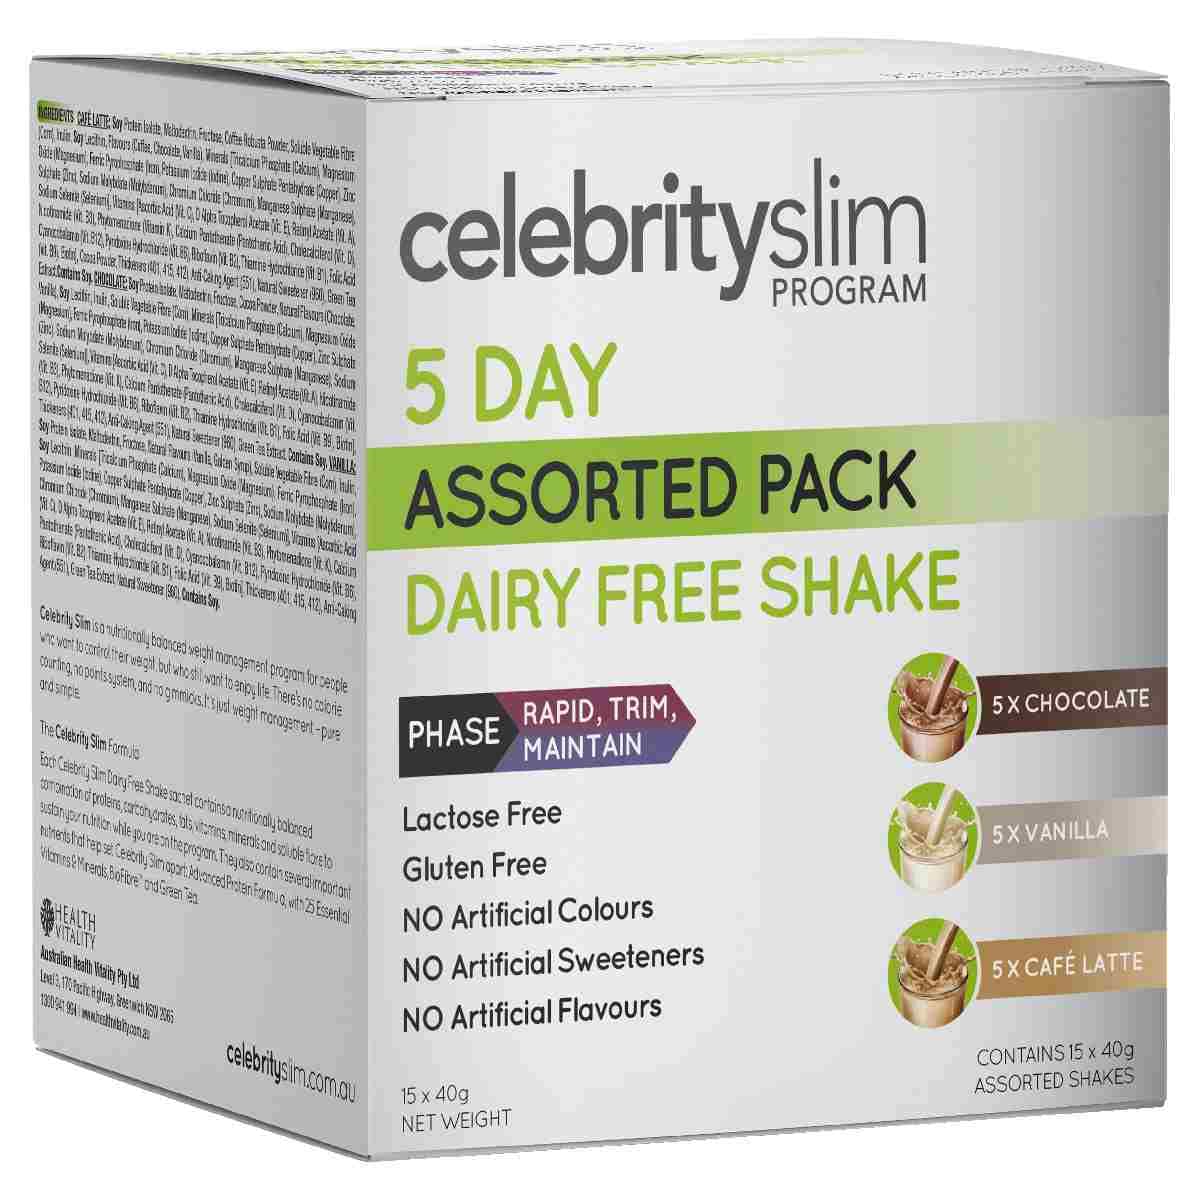 Celebrity Slim 5 Day Assorted Dairy Free Shake 15 x 40g Australia